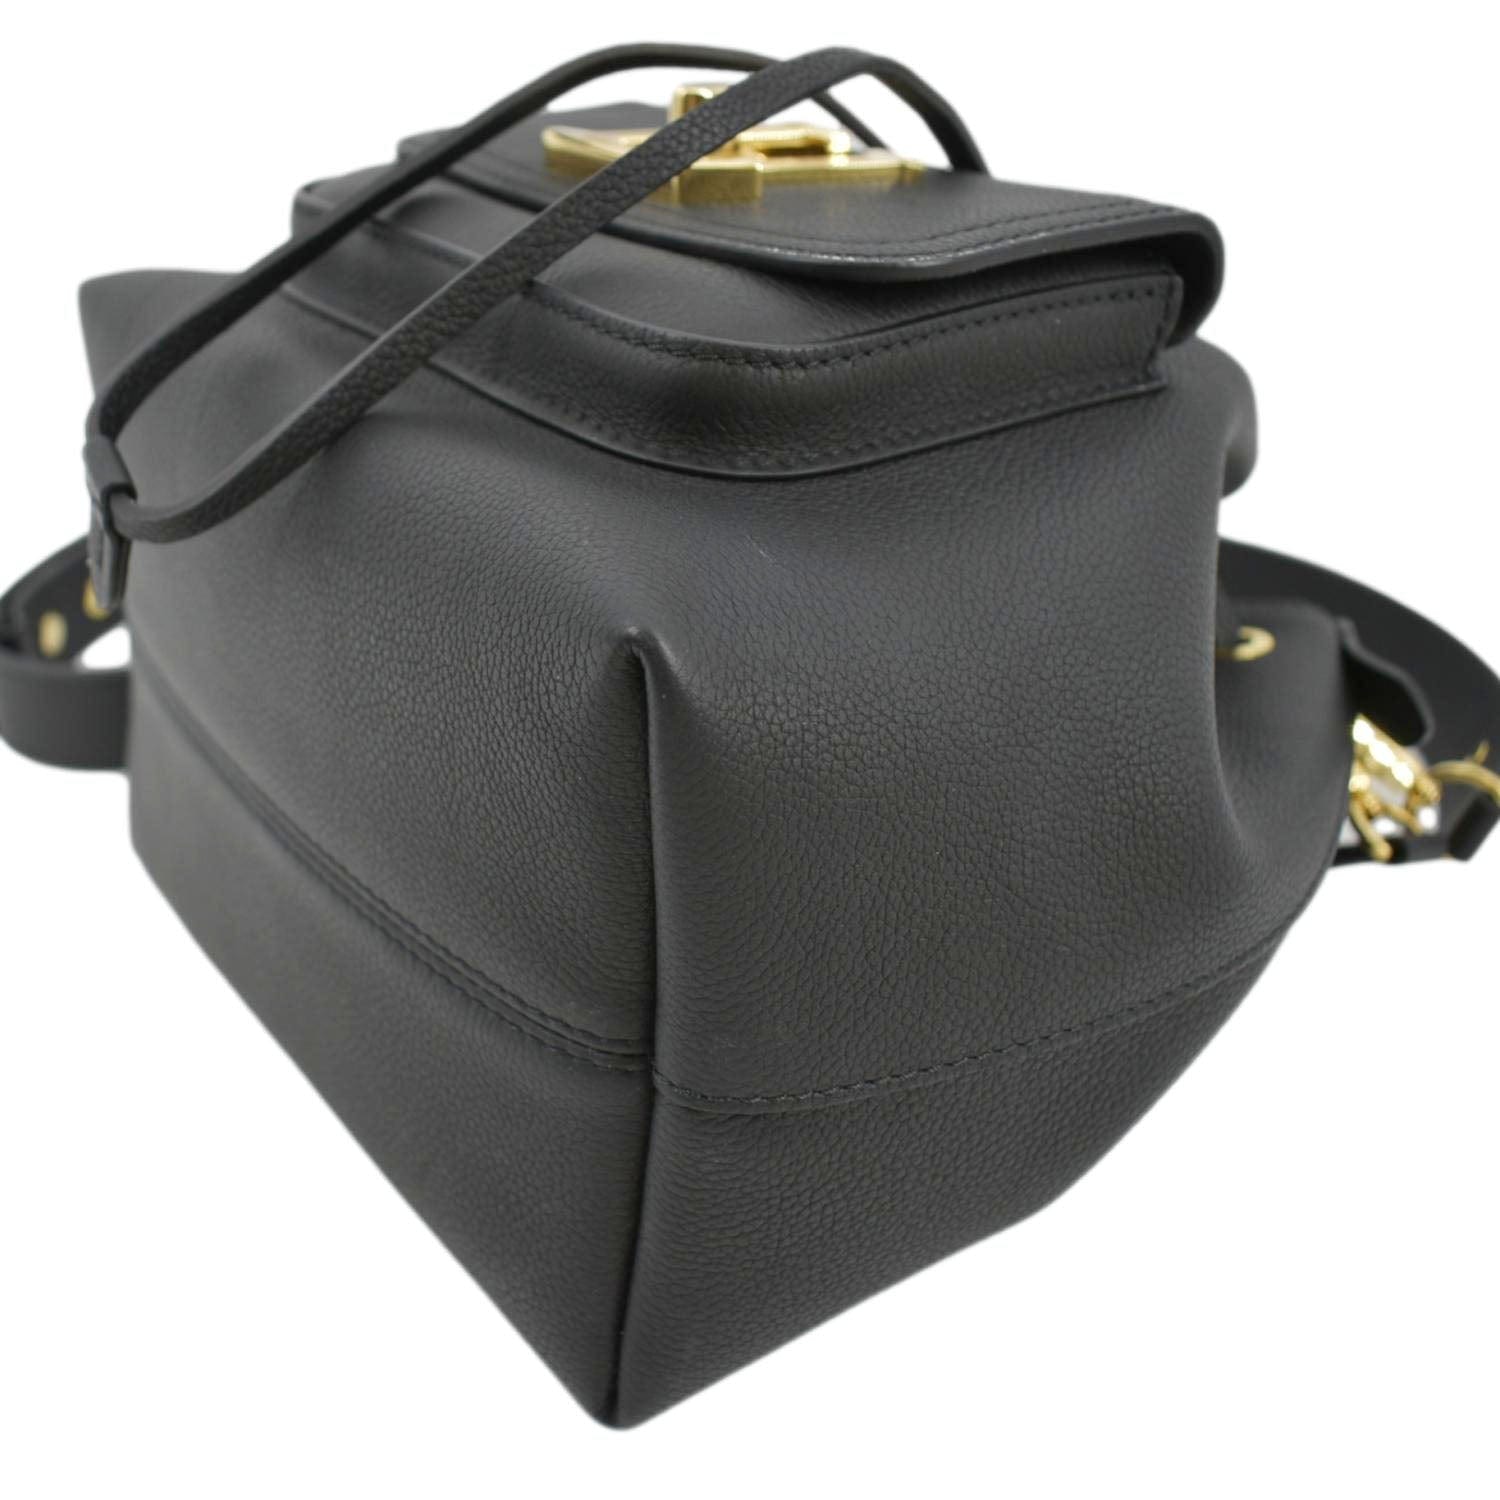 Lockme Bucket – Keeks Designer Handbags